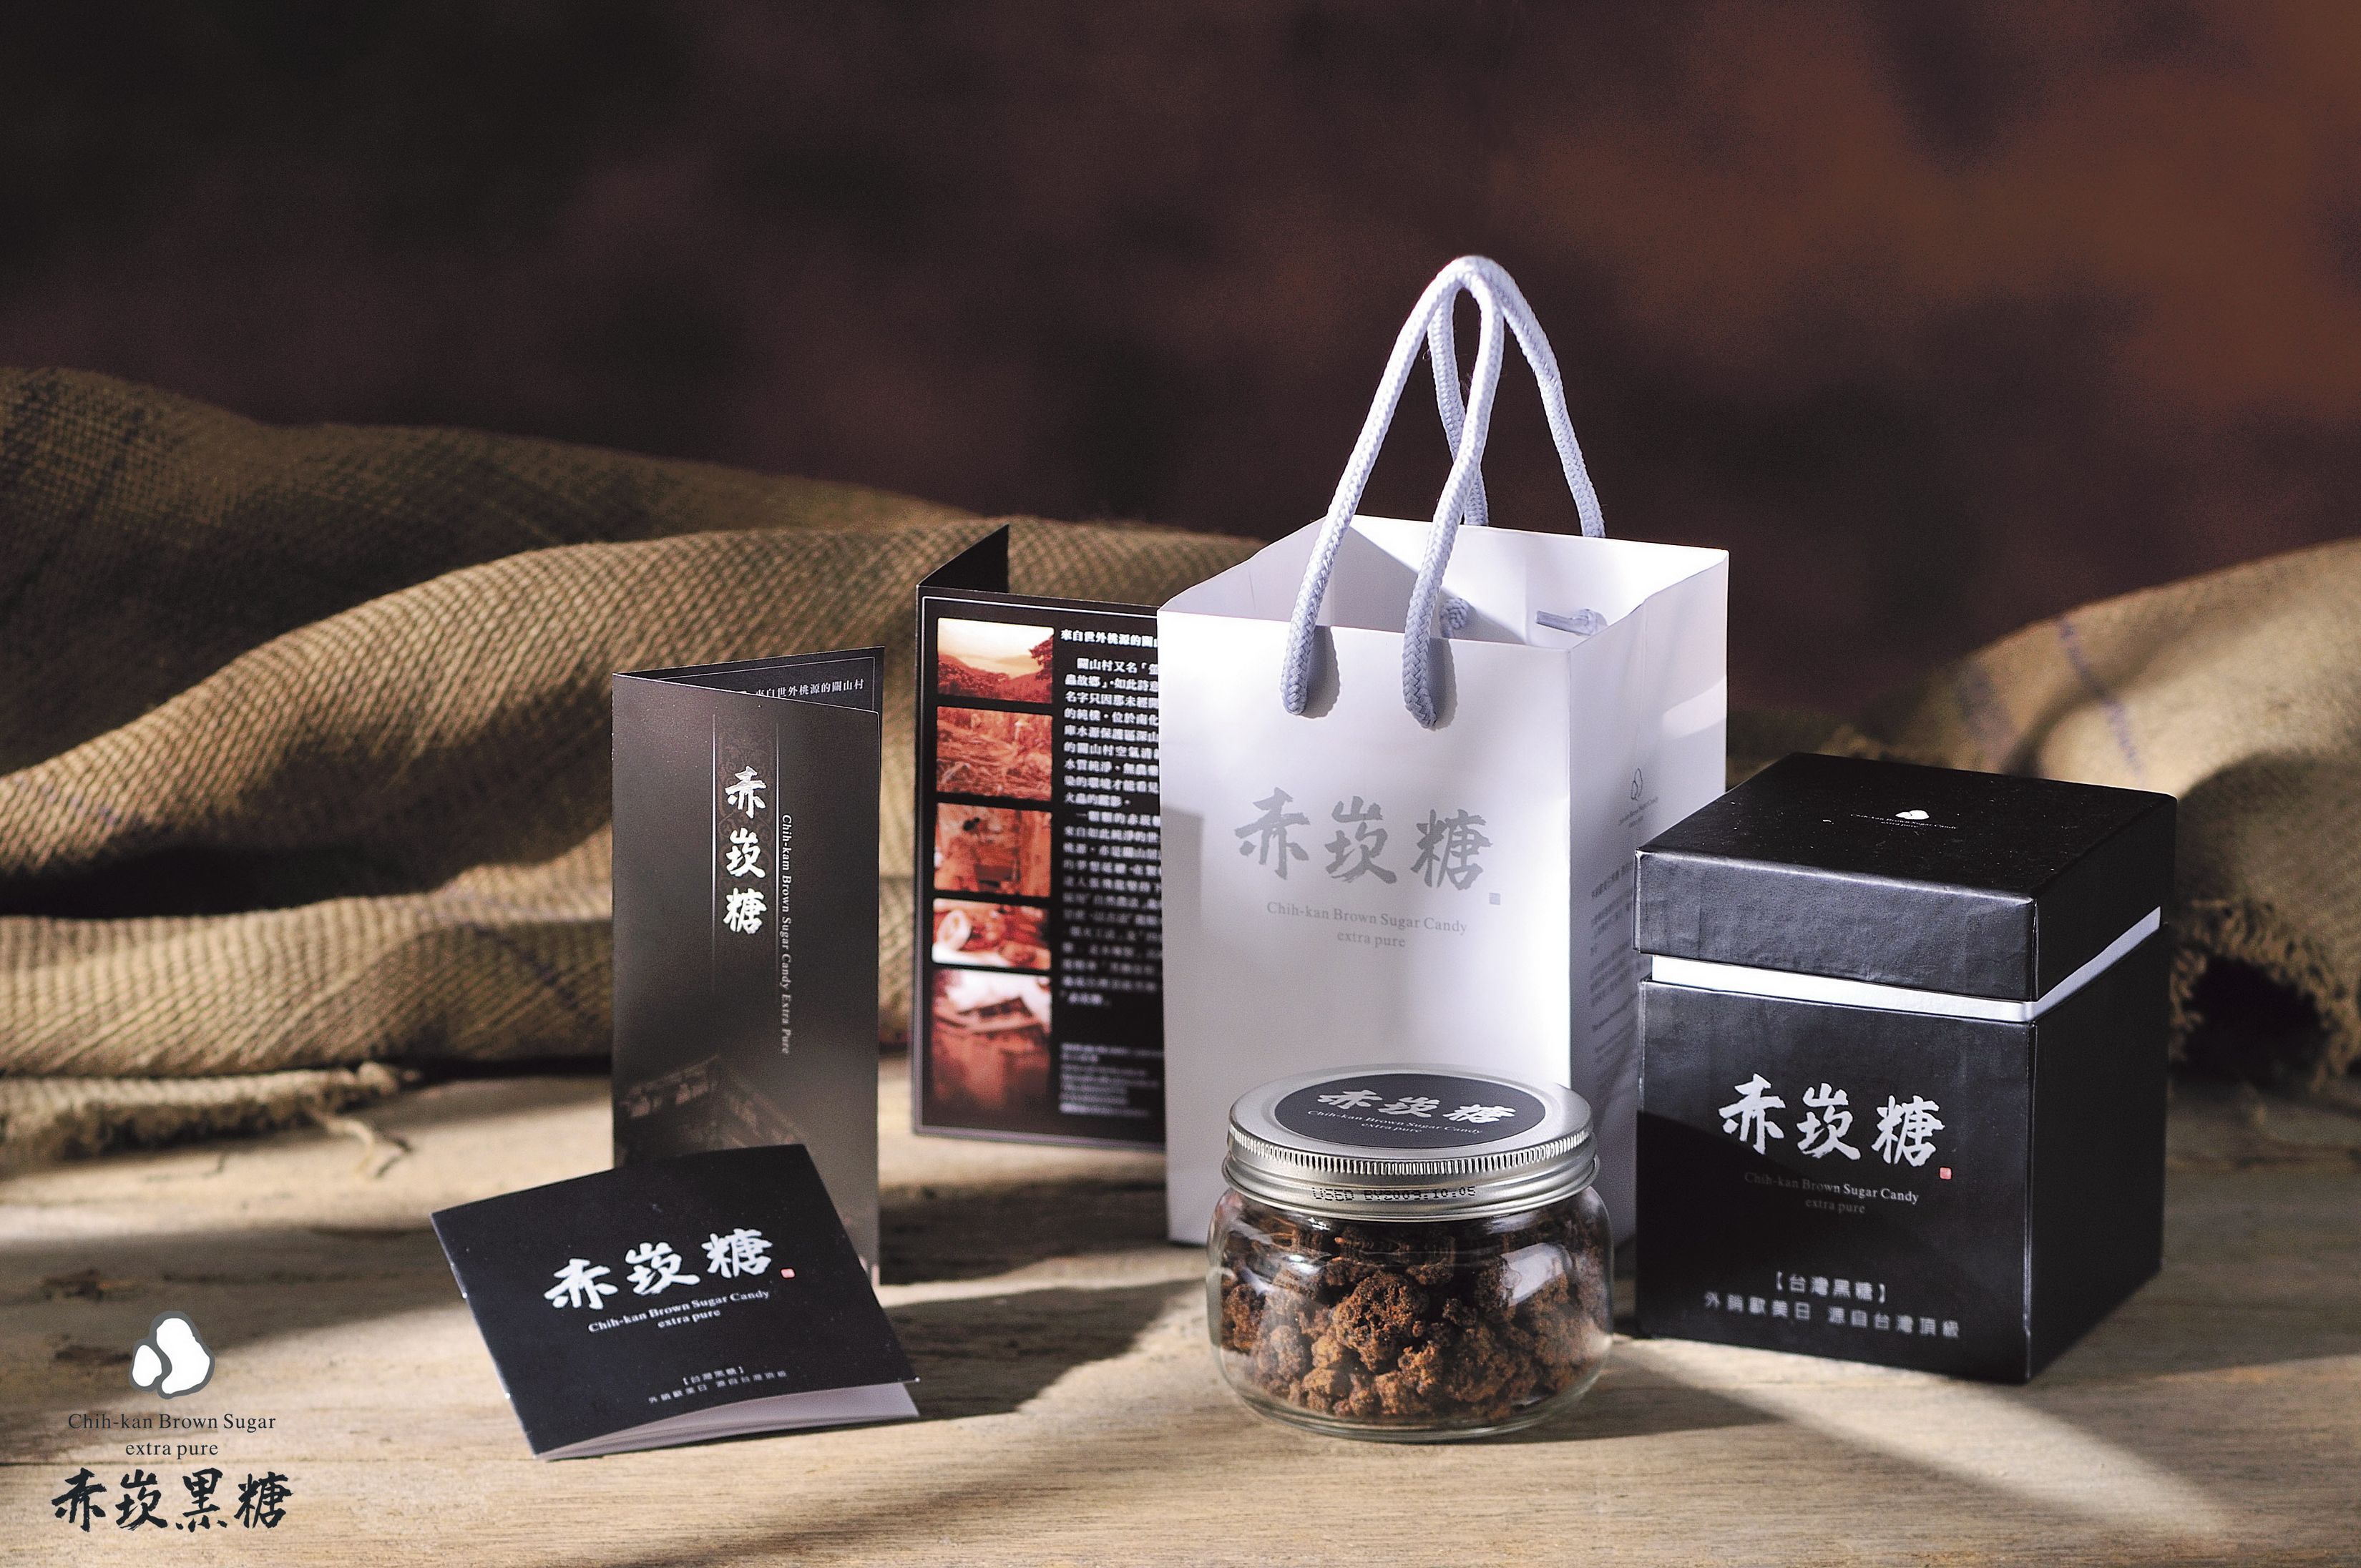 赤崁糖礼盒兼具文化意涵与产品特色。